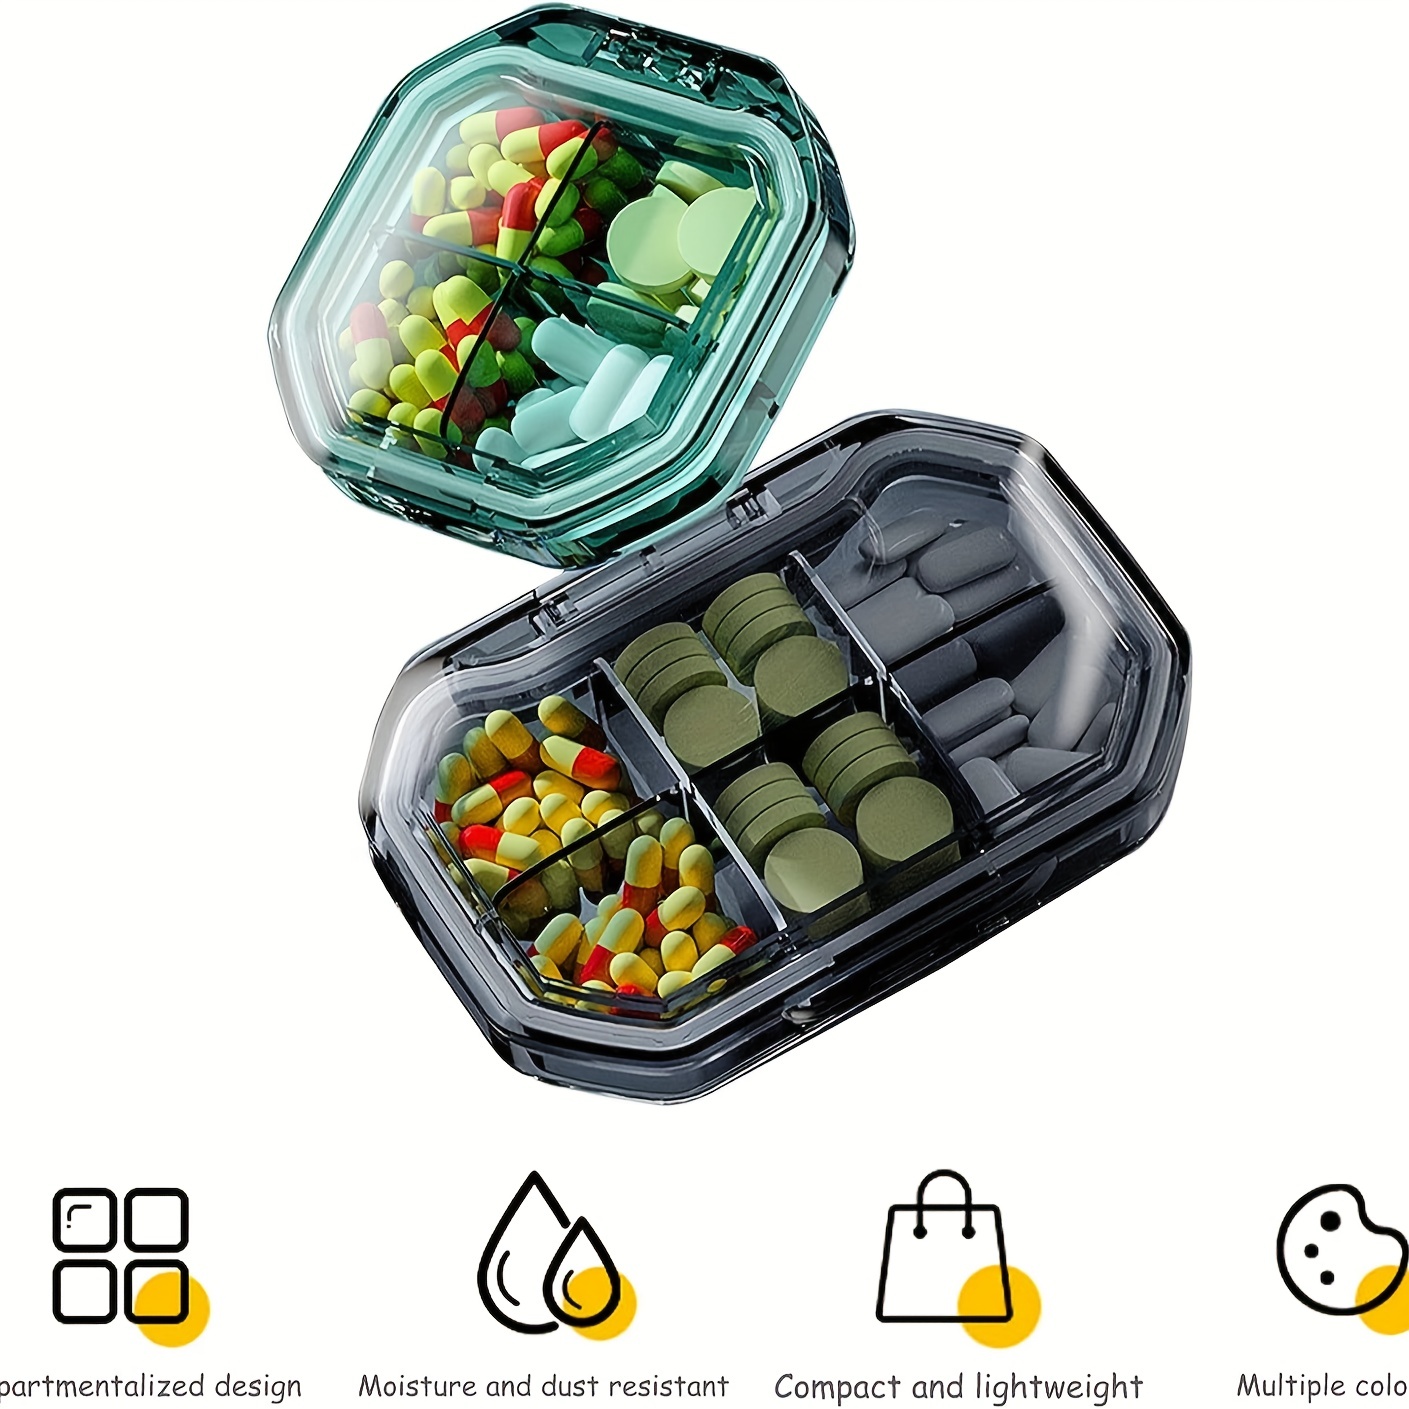 Pill Box, Cute Pill Case For Purse Travel Mini Pill Container